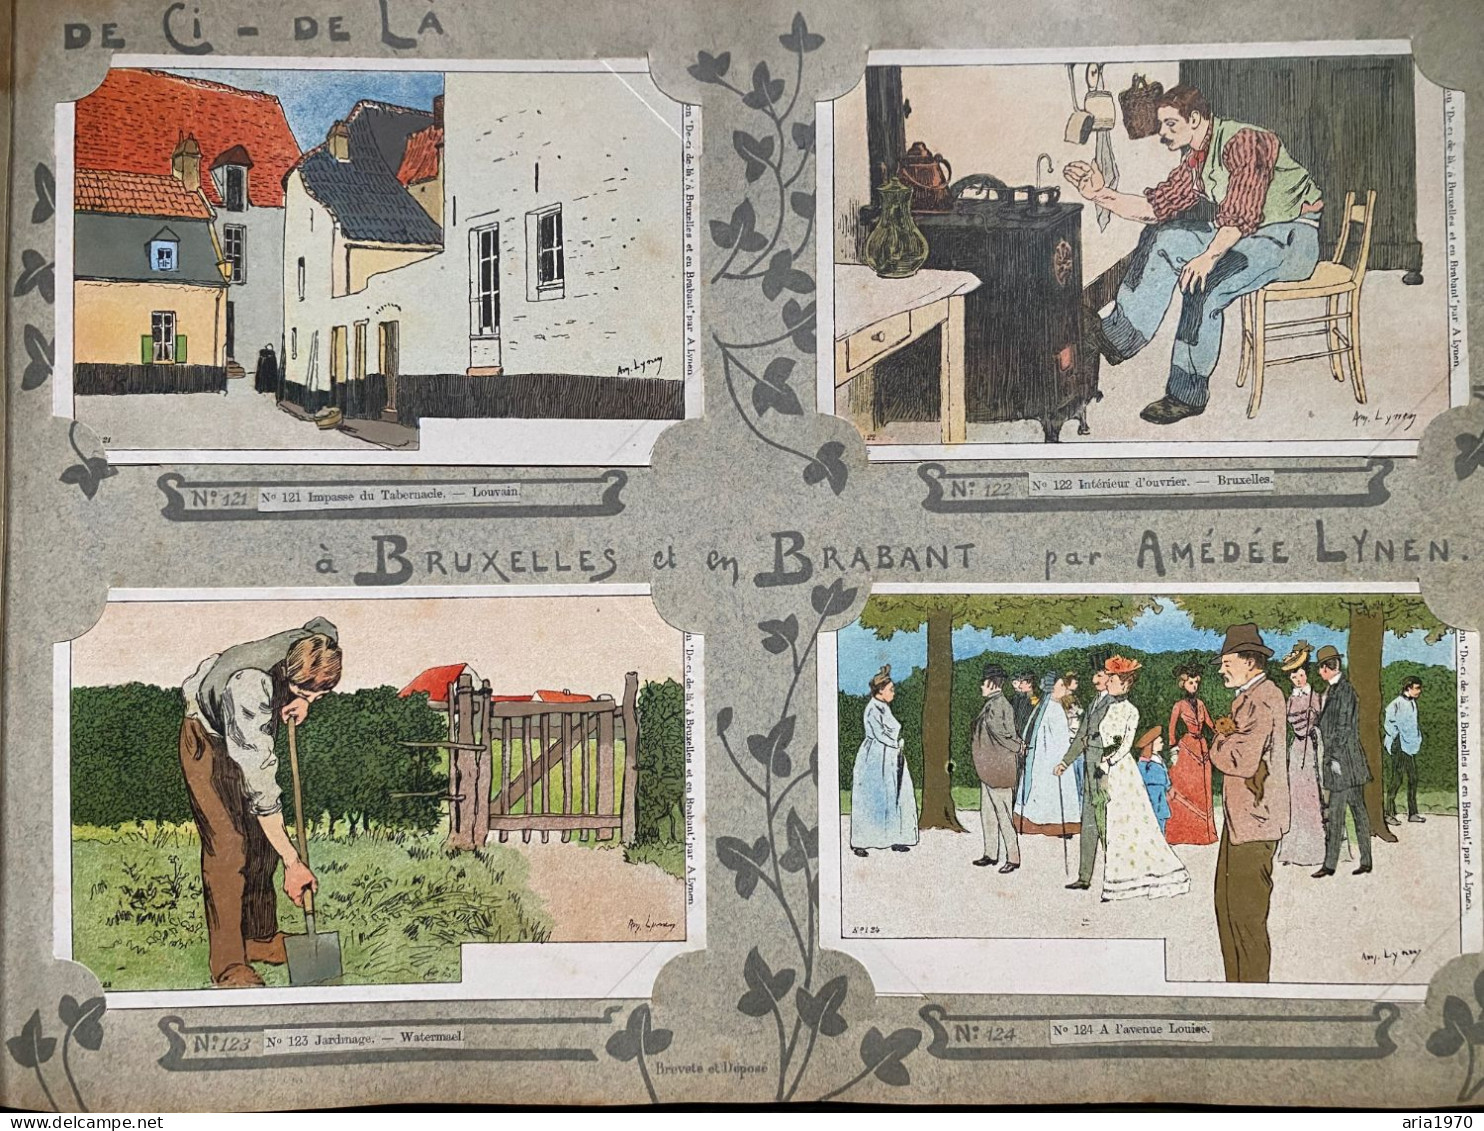 Illustrateur Amédée Lynen album complet 200 Cartes postales en Litho Bruxelles et Brabant   de çi - de là